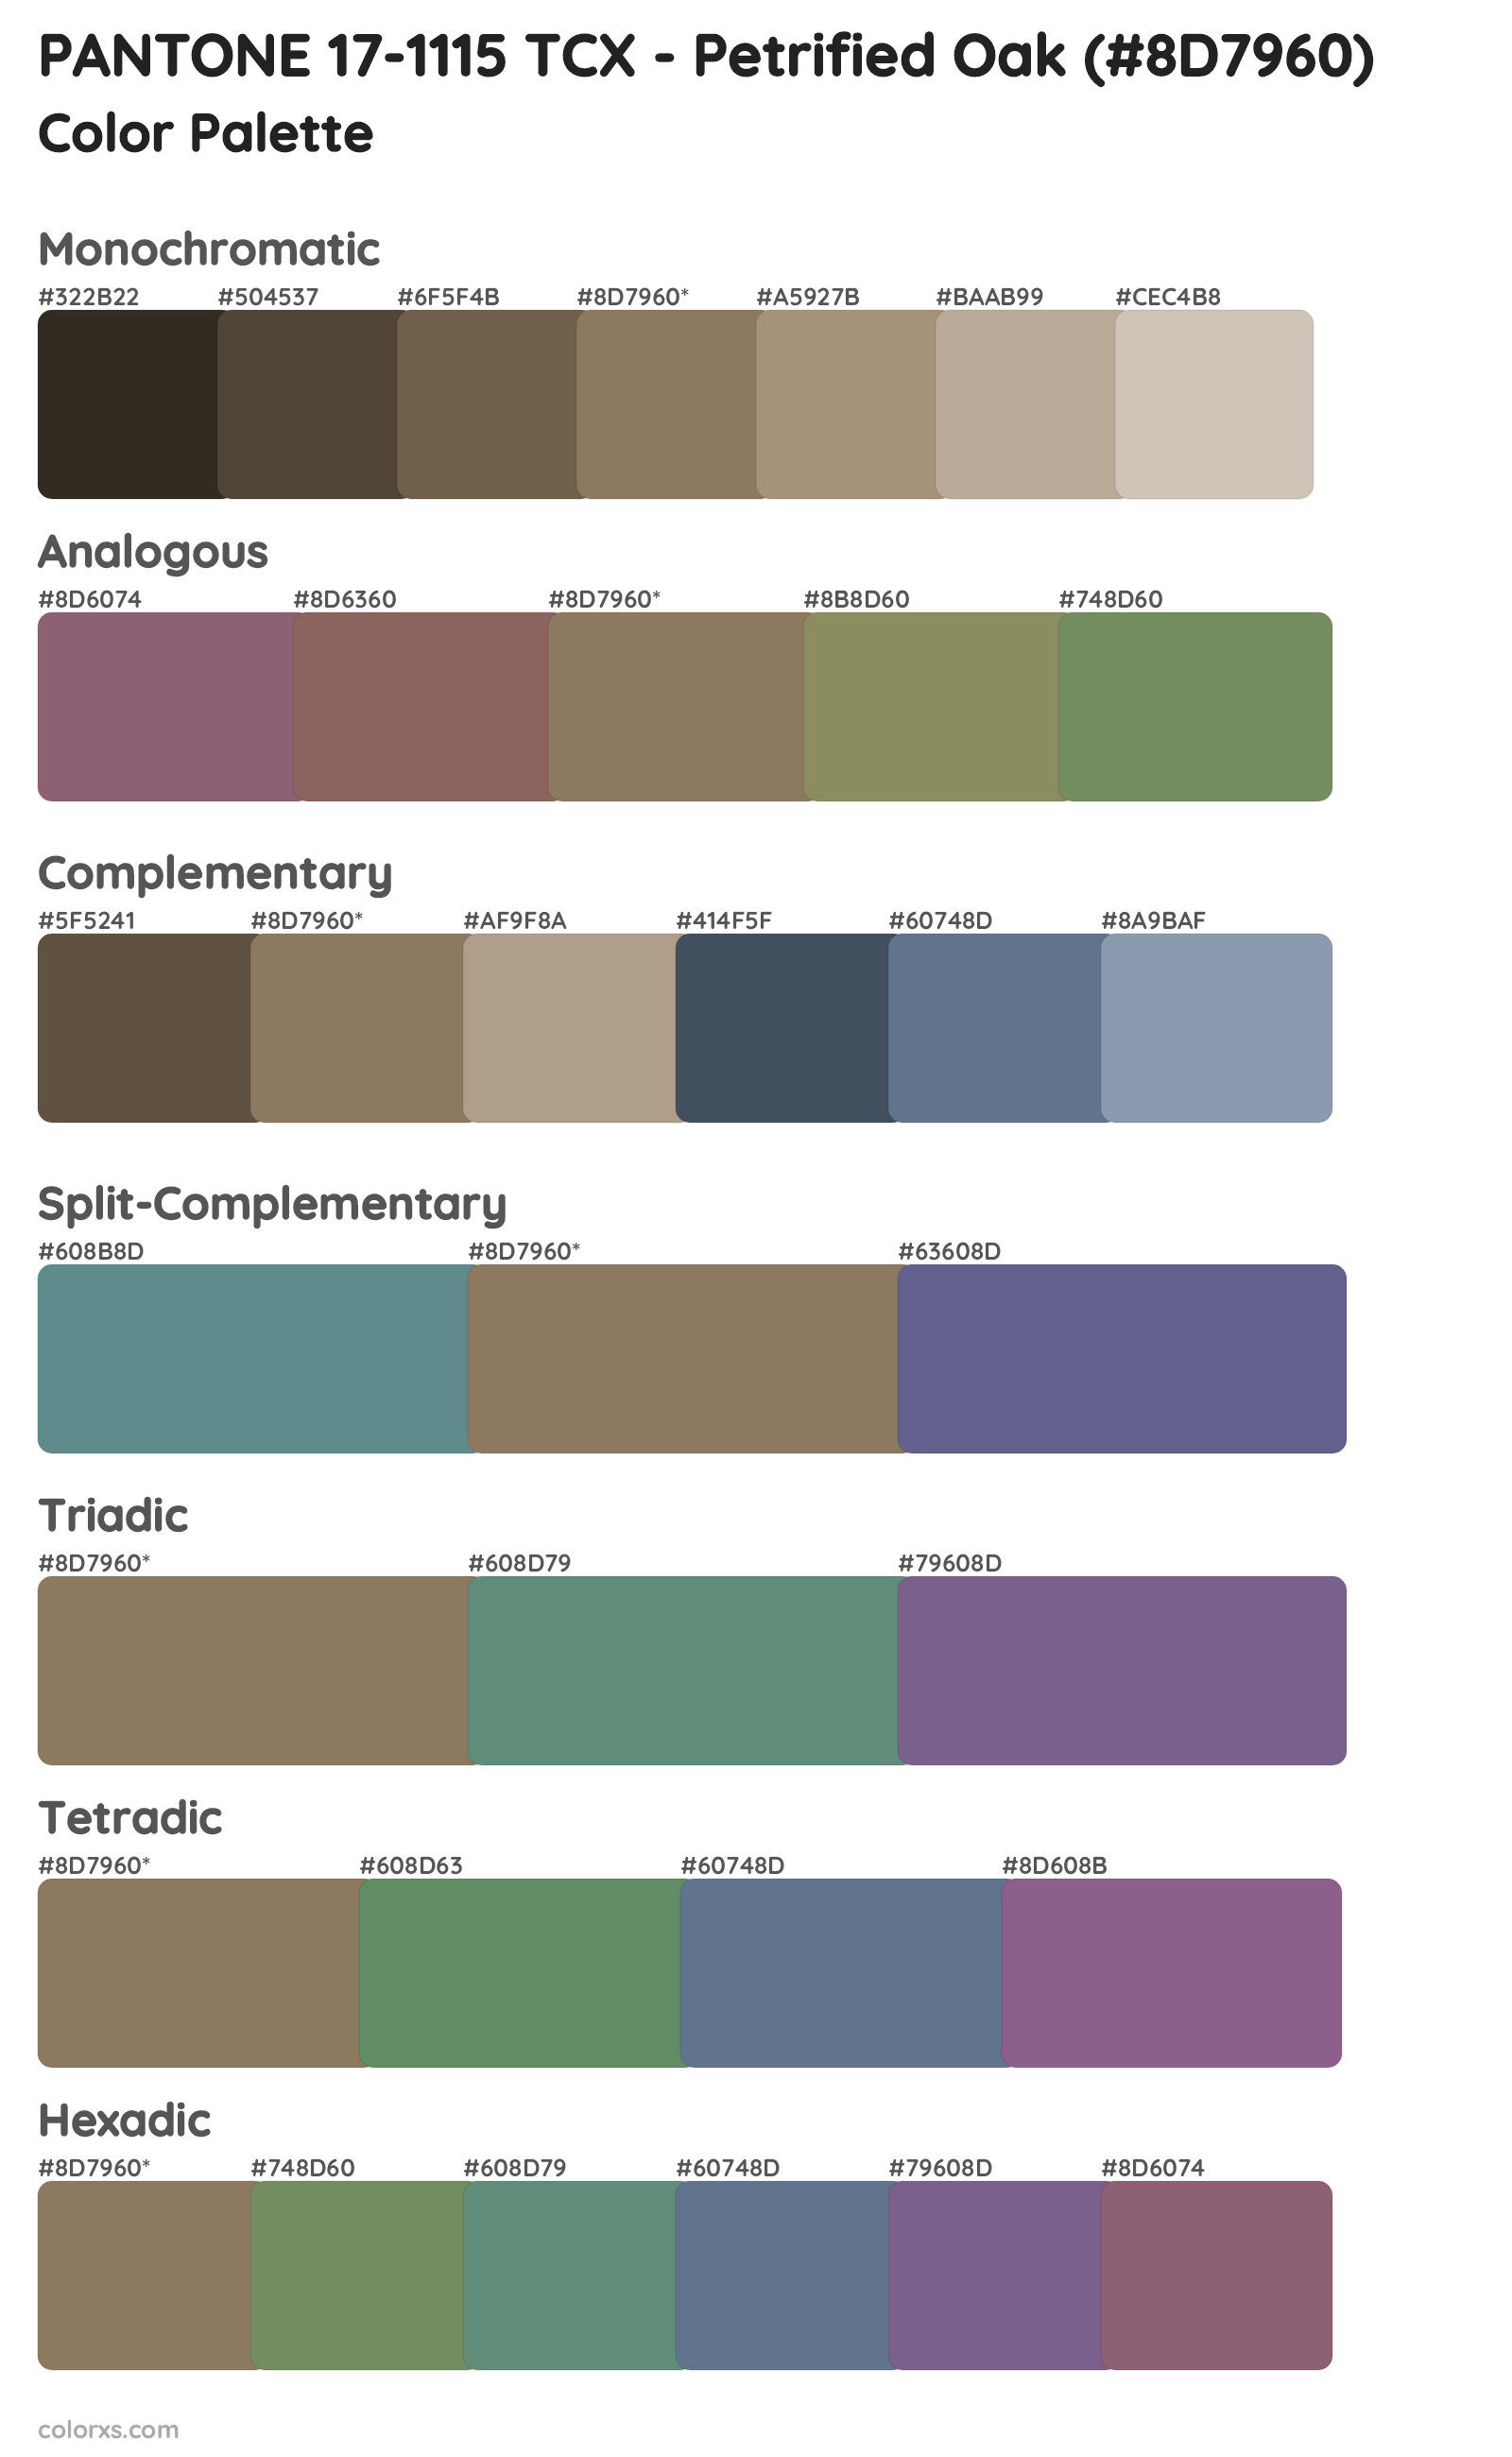 PANTONE 17-1115 TCX - Petrified Oak Color Scheme Palettes